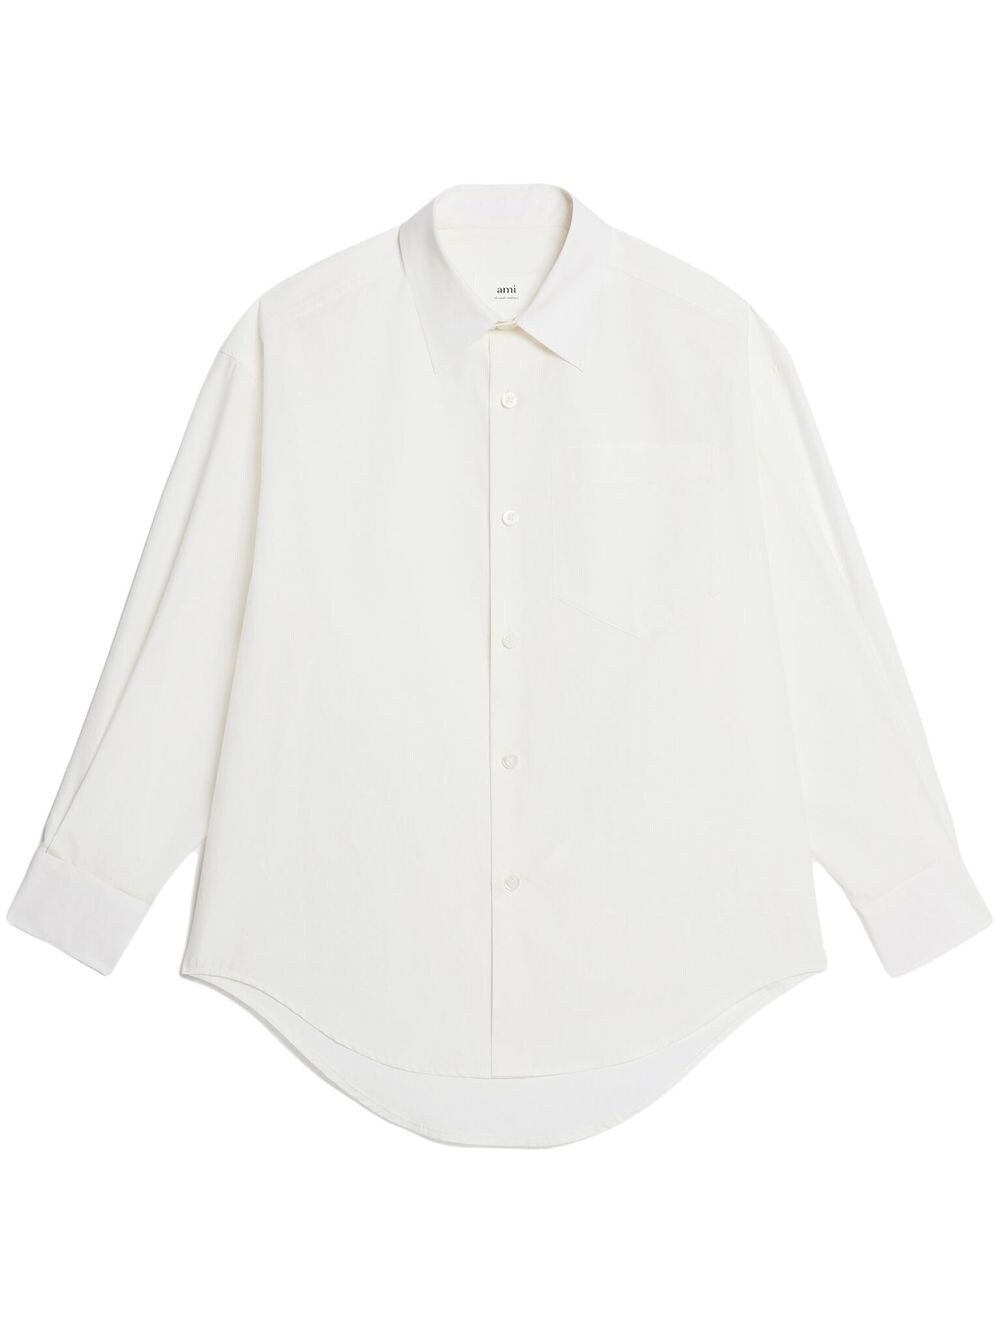 Ami Paris AMI PARIS- Boxy Fit Cotton Shirt